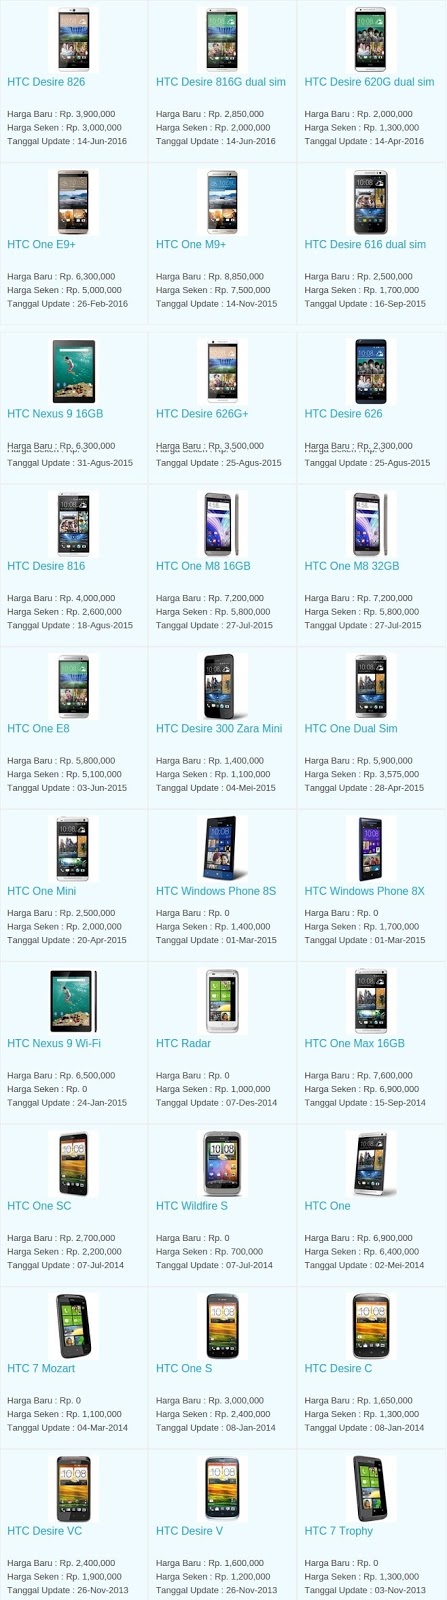 Daftar Harga Hp Terbaru HTC Juli 2016